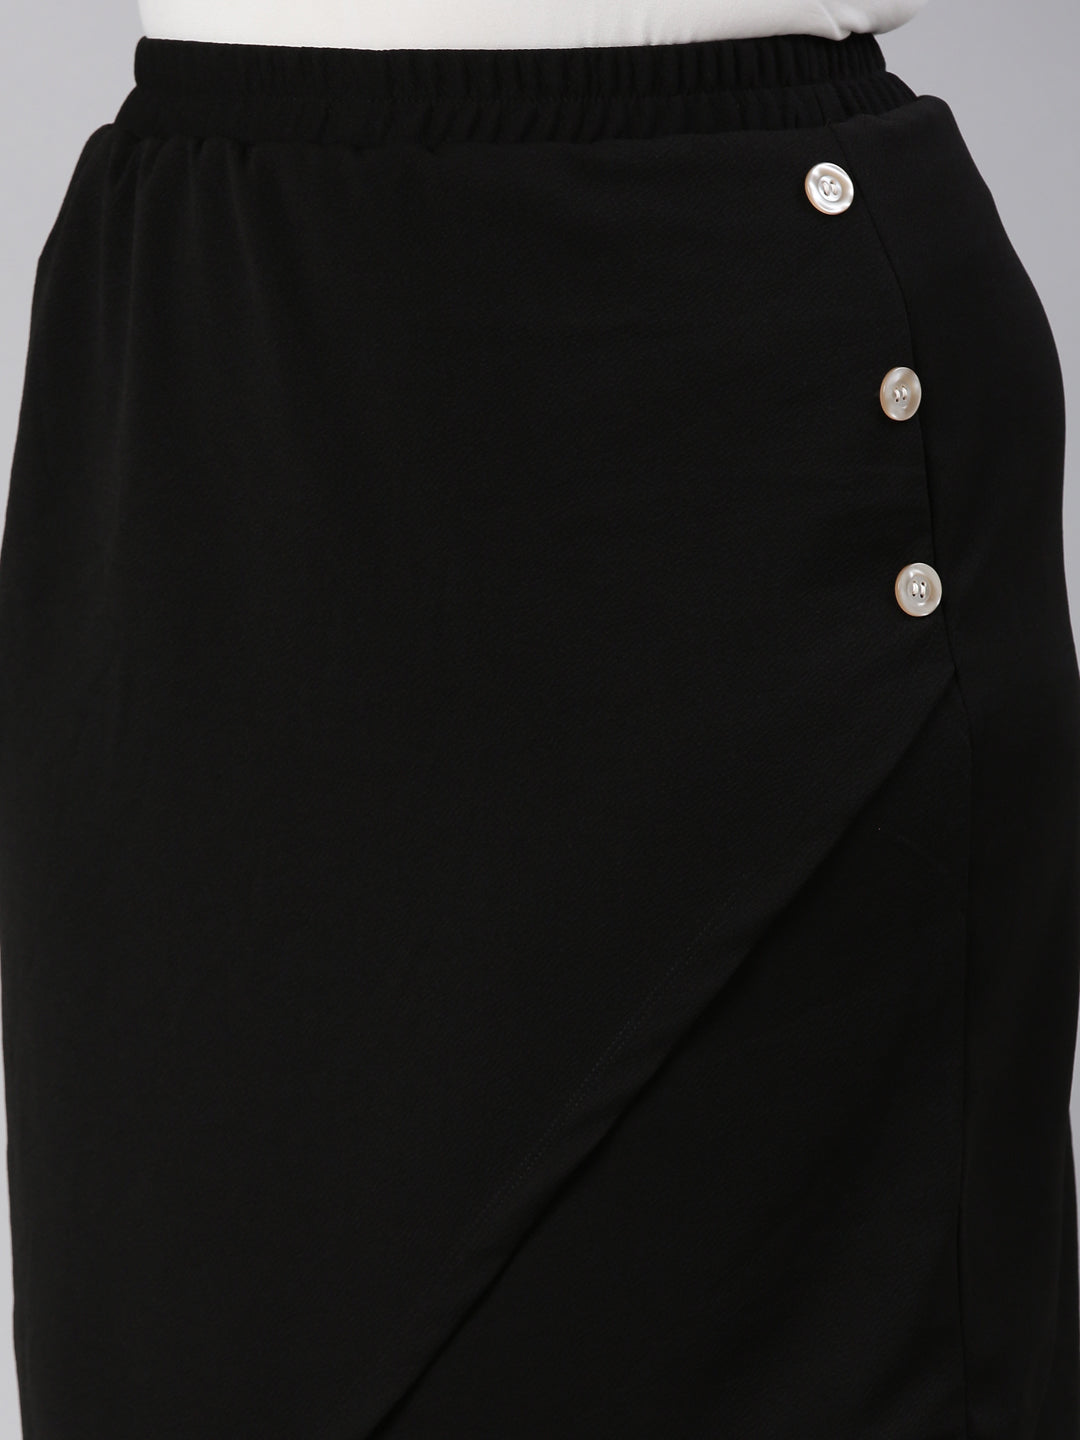 Black Overlap Skirt 6973168.htm - Buy Black Overlap Skirt 6973168.htm  online in India